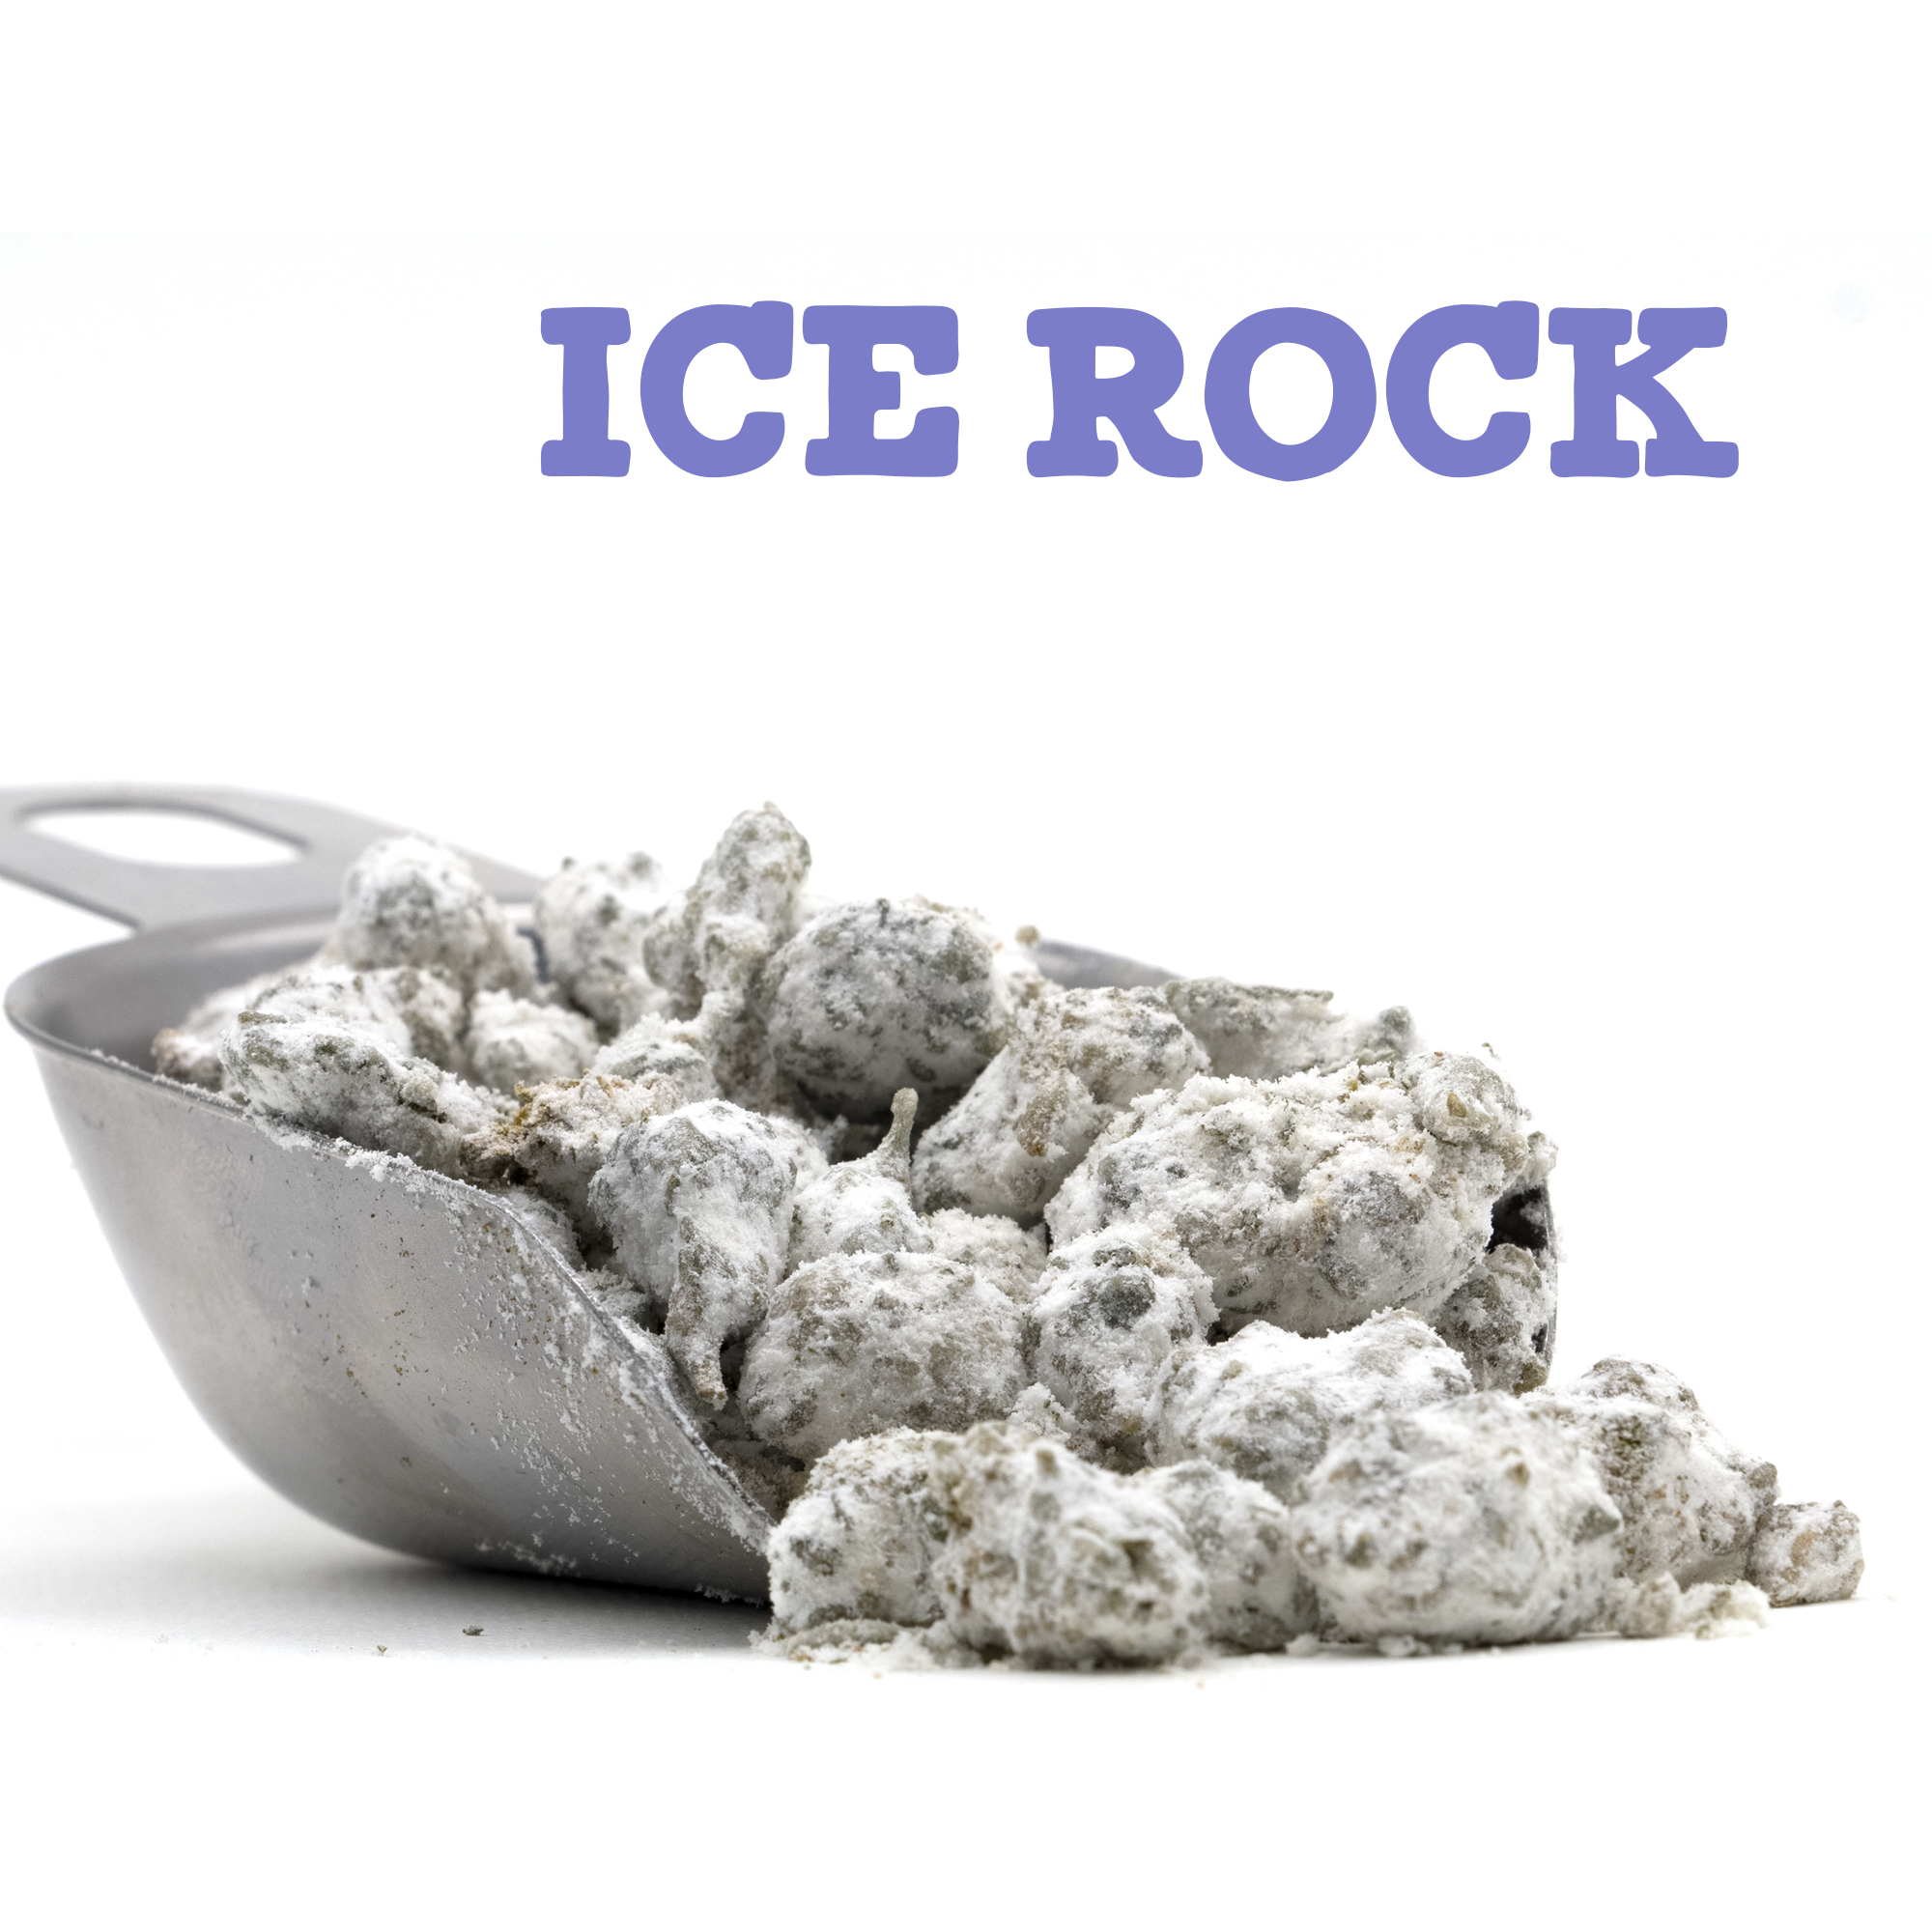 ICE ROCK1